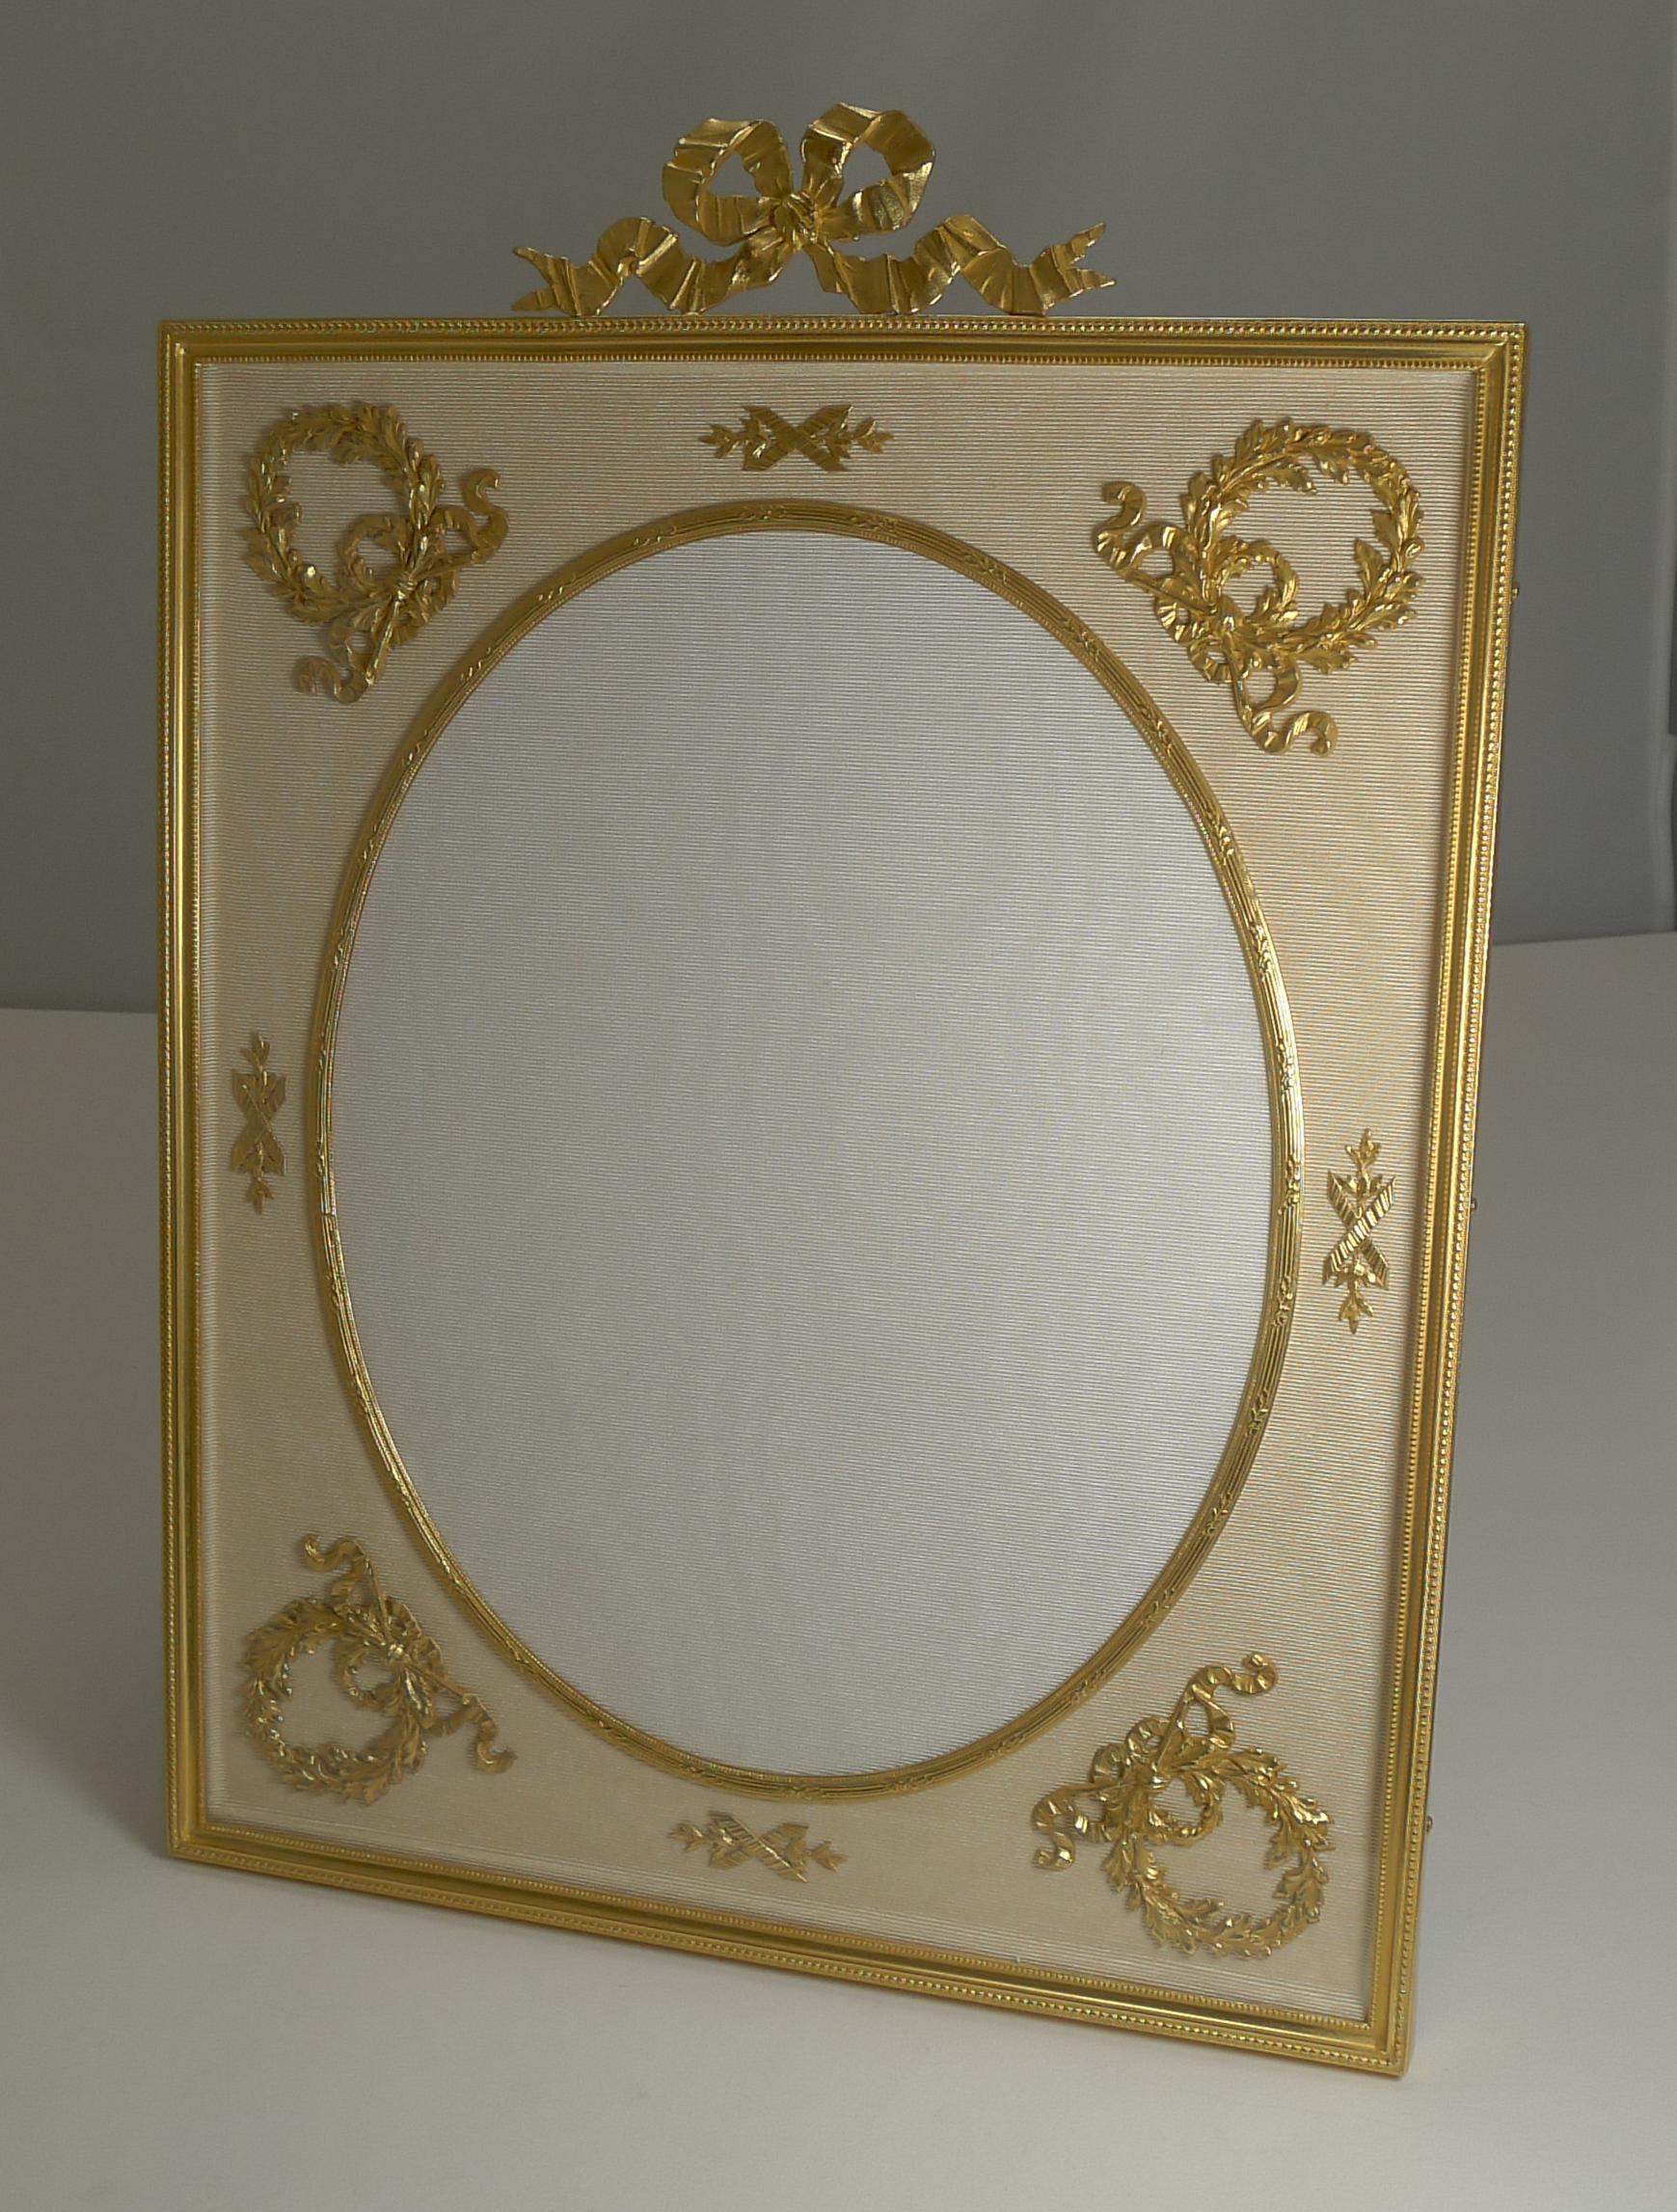 Un cadre exquis et très grandiose en bronze doré datant d'environ 1900. Réalisé en bronze et recouvert d'or, le taffetas de soie crème sous le verre est monté avec une monture dorée.

L'ouverture ovale mesure 9 3/4 